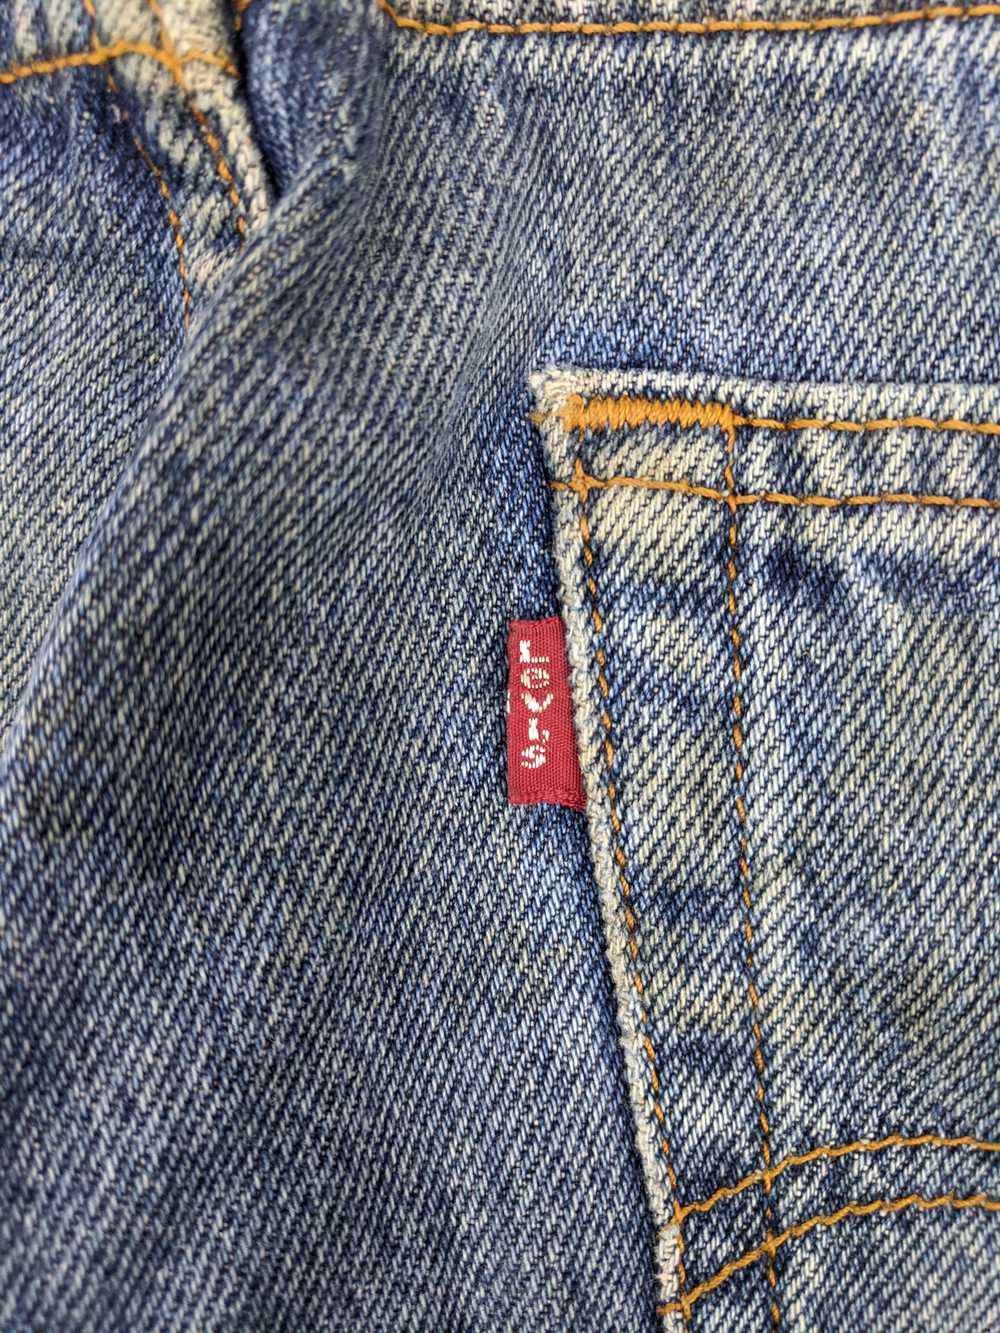 Vintage - Vintage Levis 517 Flared Bootcut Jeans - image 12